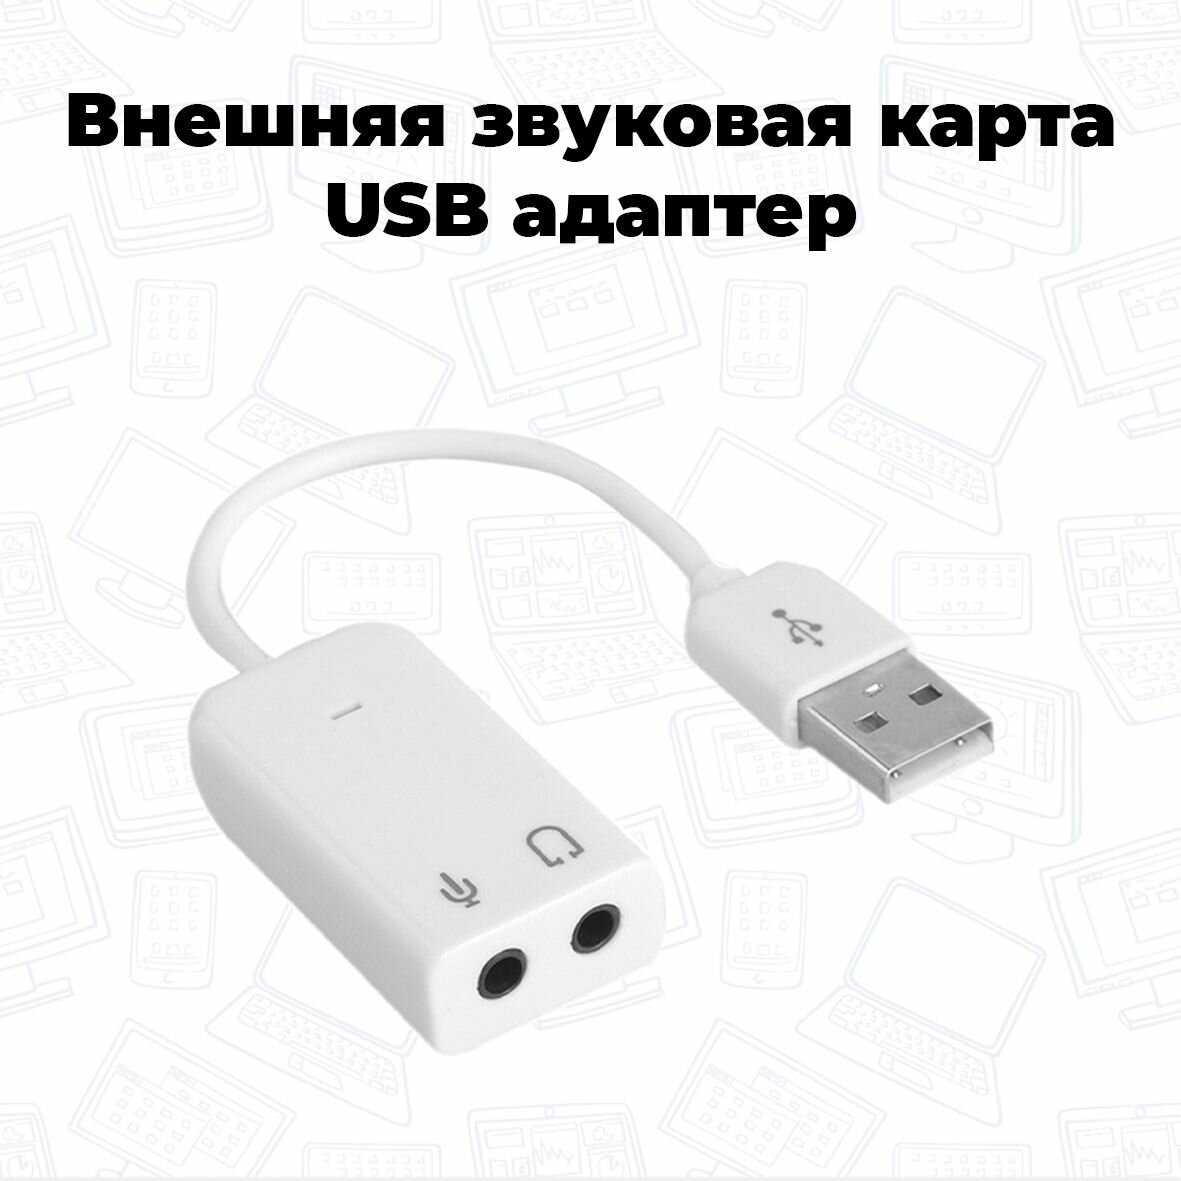 Внешняя USB звуковая карта 7.1 Audio USB белая